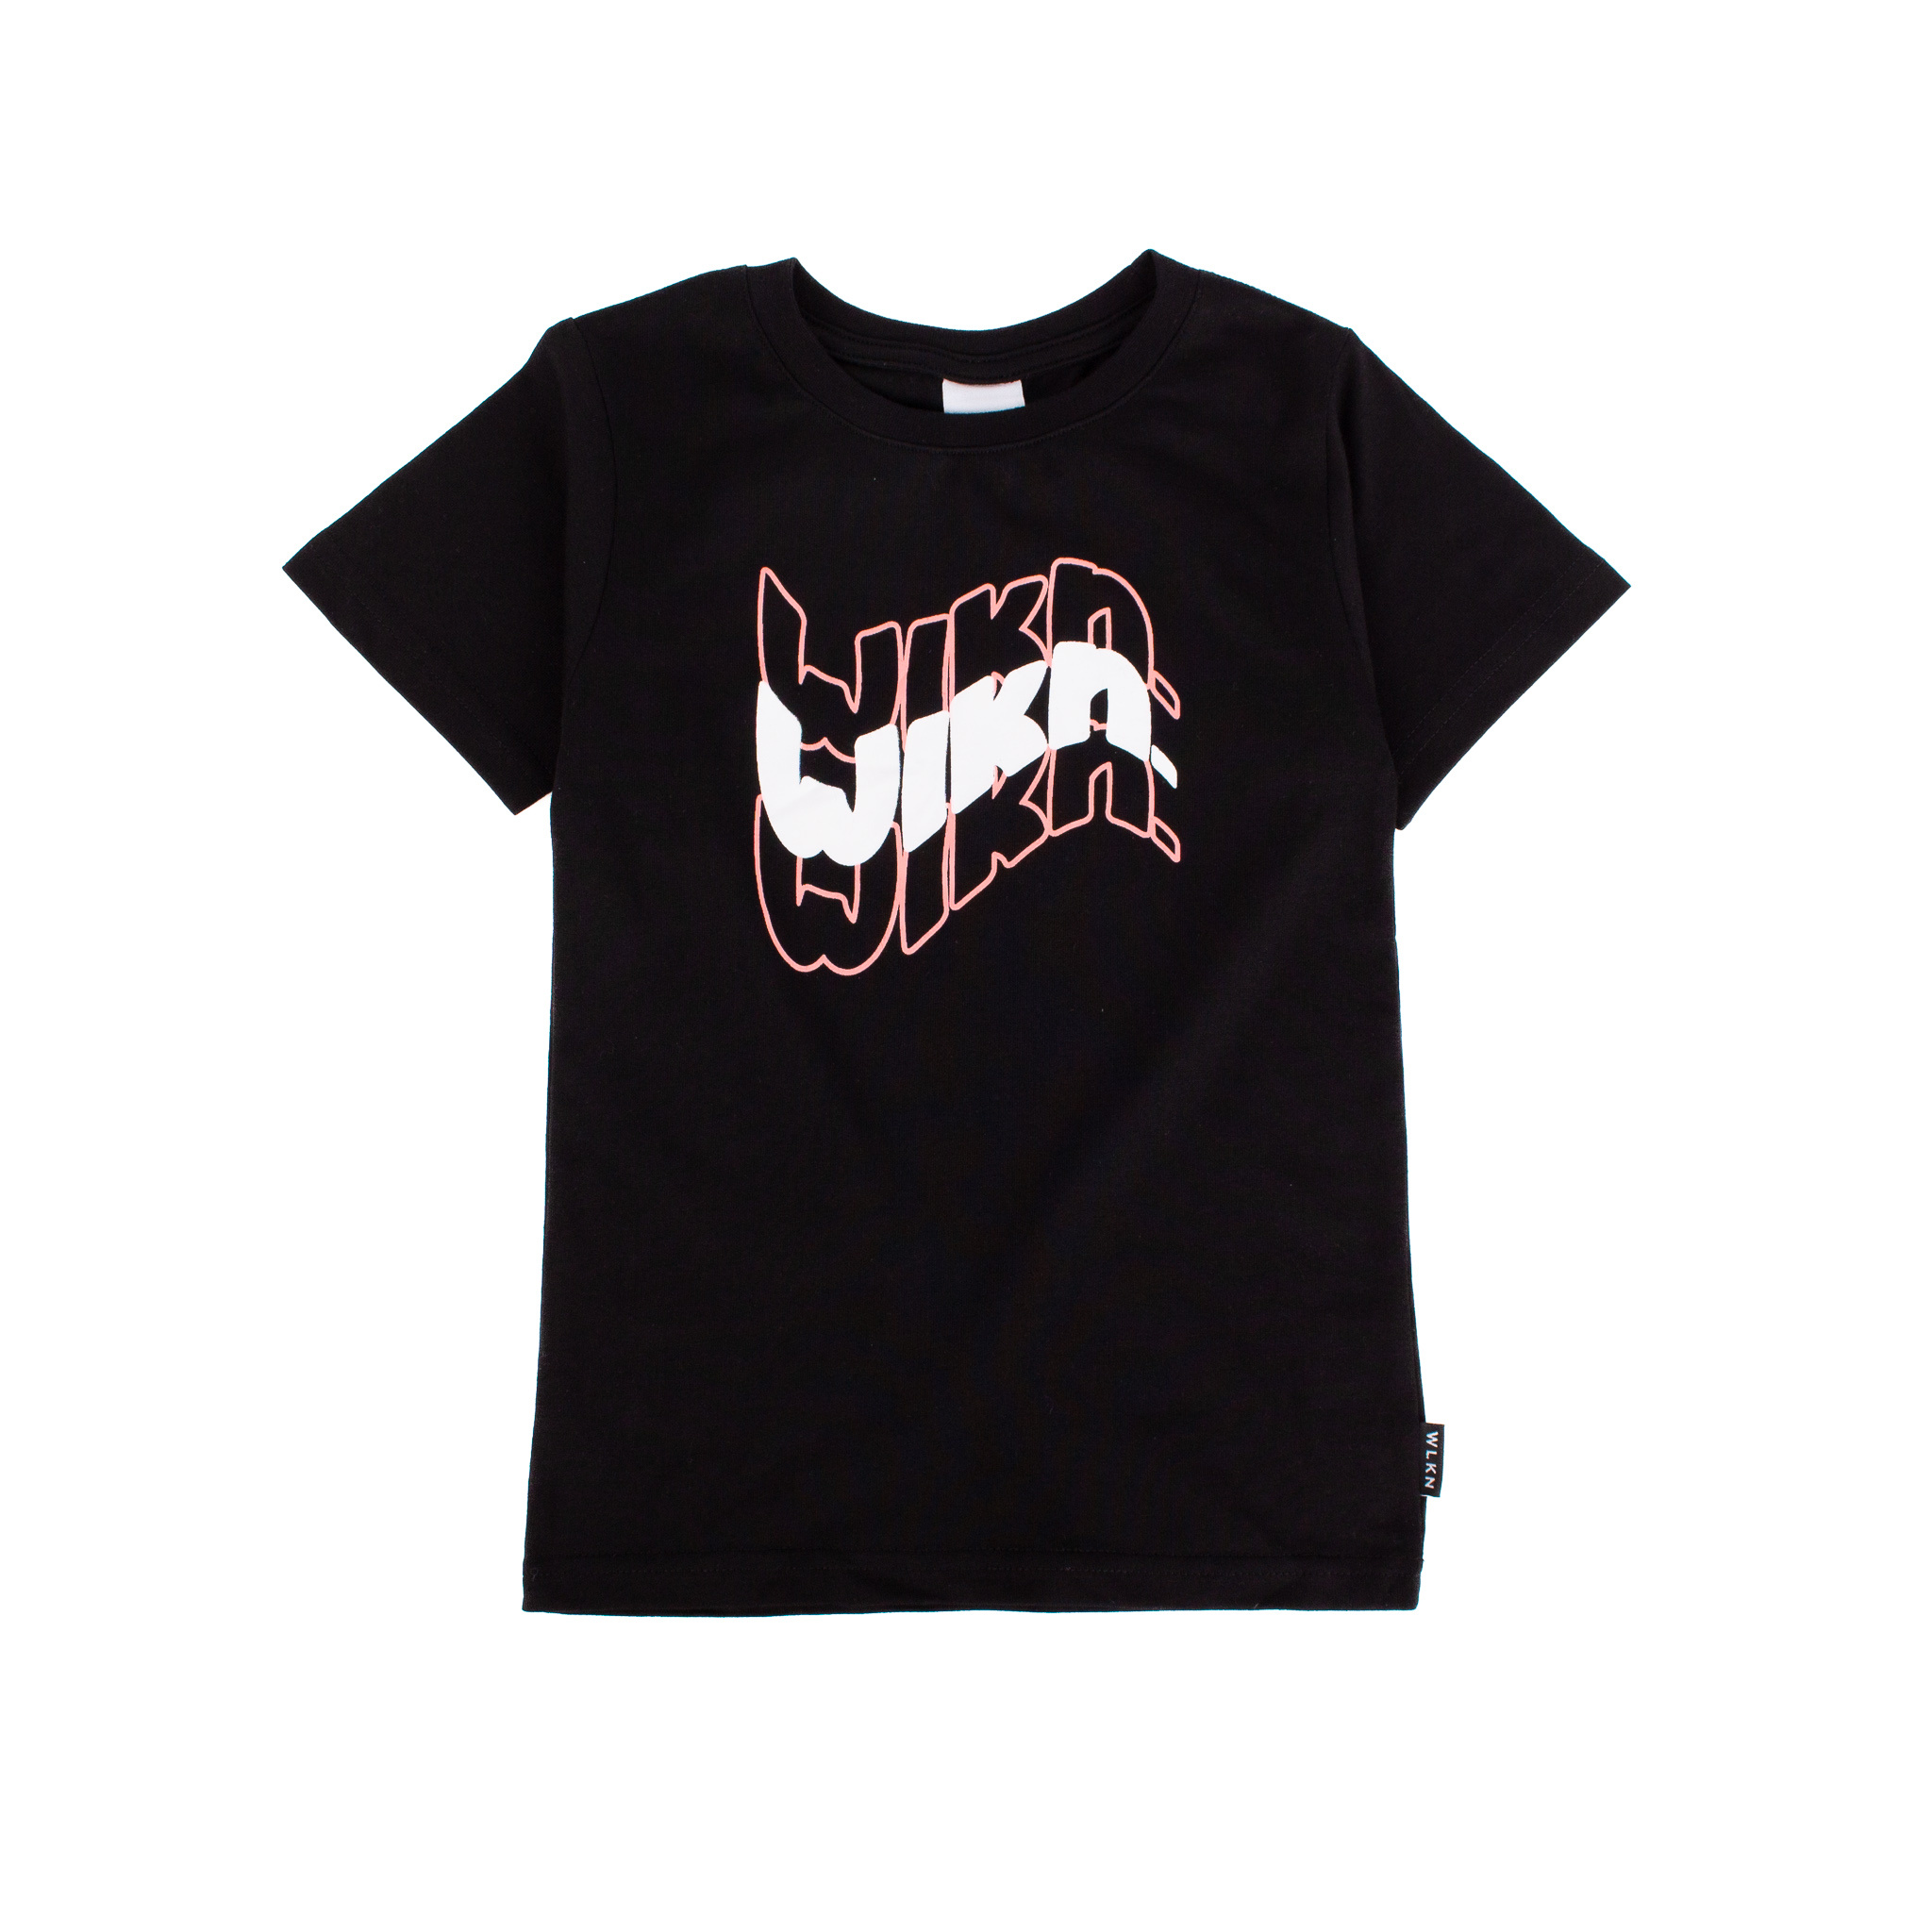 WLKN WLKN : Girl Junior Wavy T-Shirt